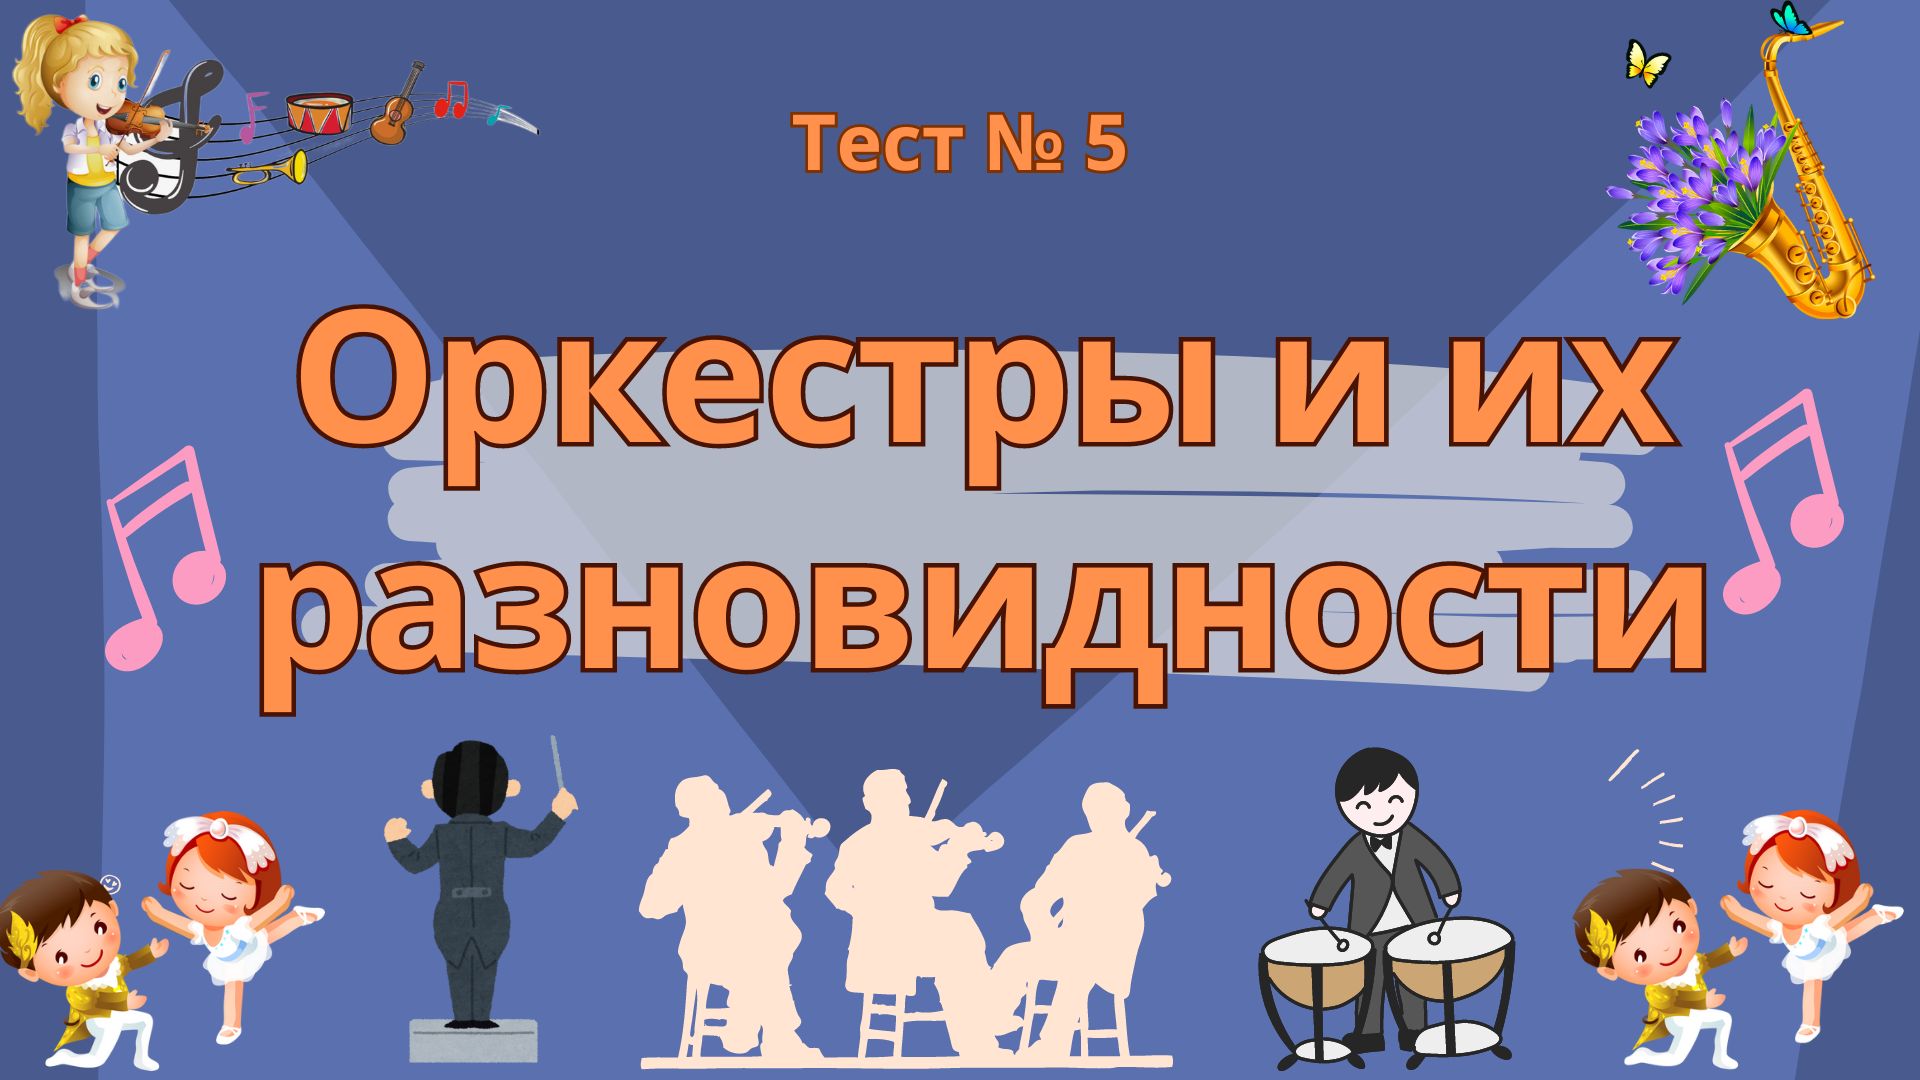 Тест №5 "Оркестры и их разновидности"